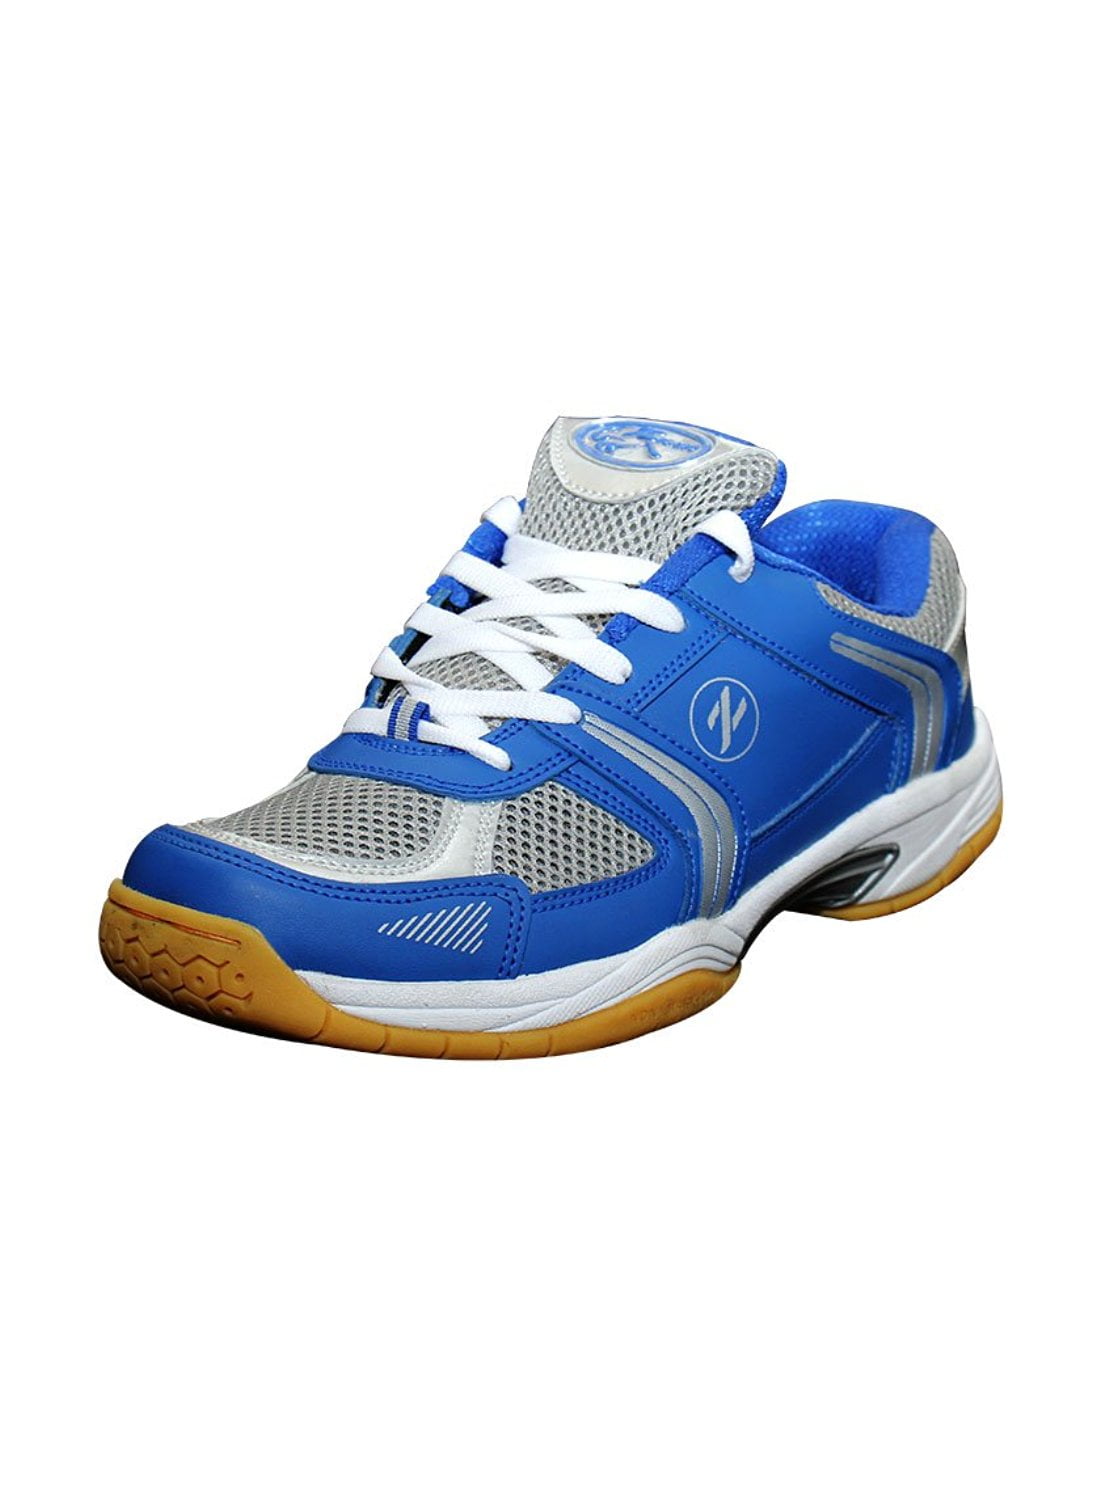 Zigaro Badminton Shoe-Blue Silver